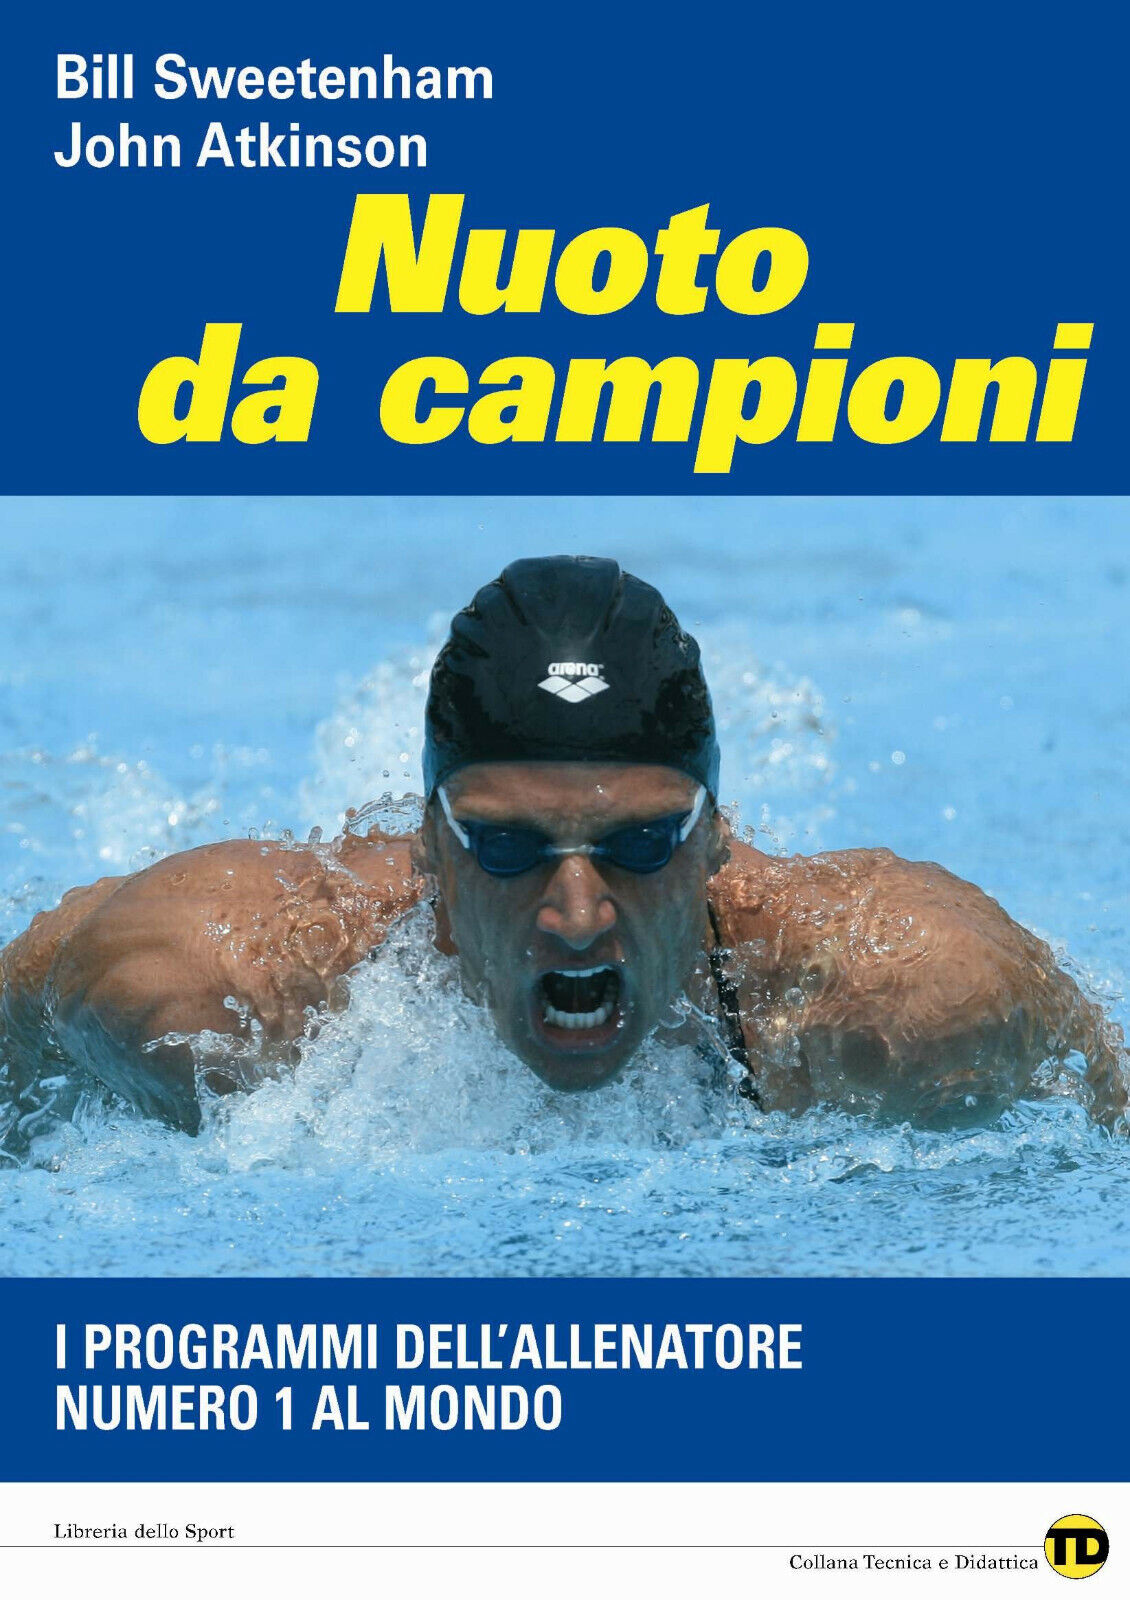 Nuoto da campioni - Bill Sweetenham, John Atkinson - Libreria dello Sport,2008 libro usato